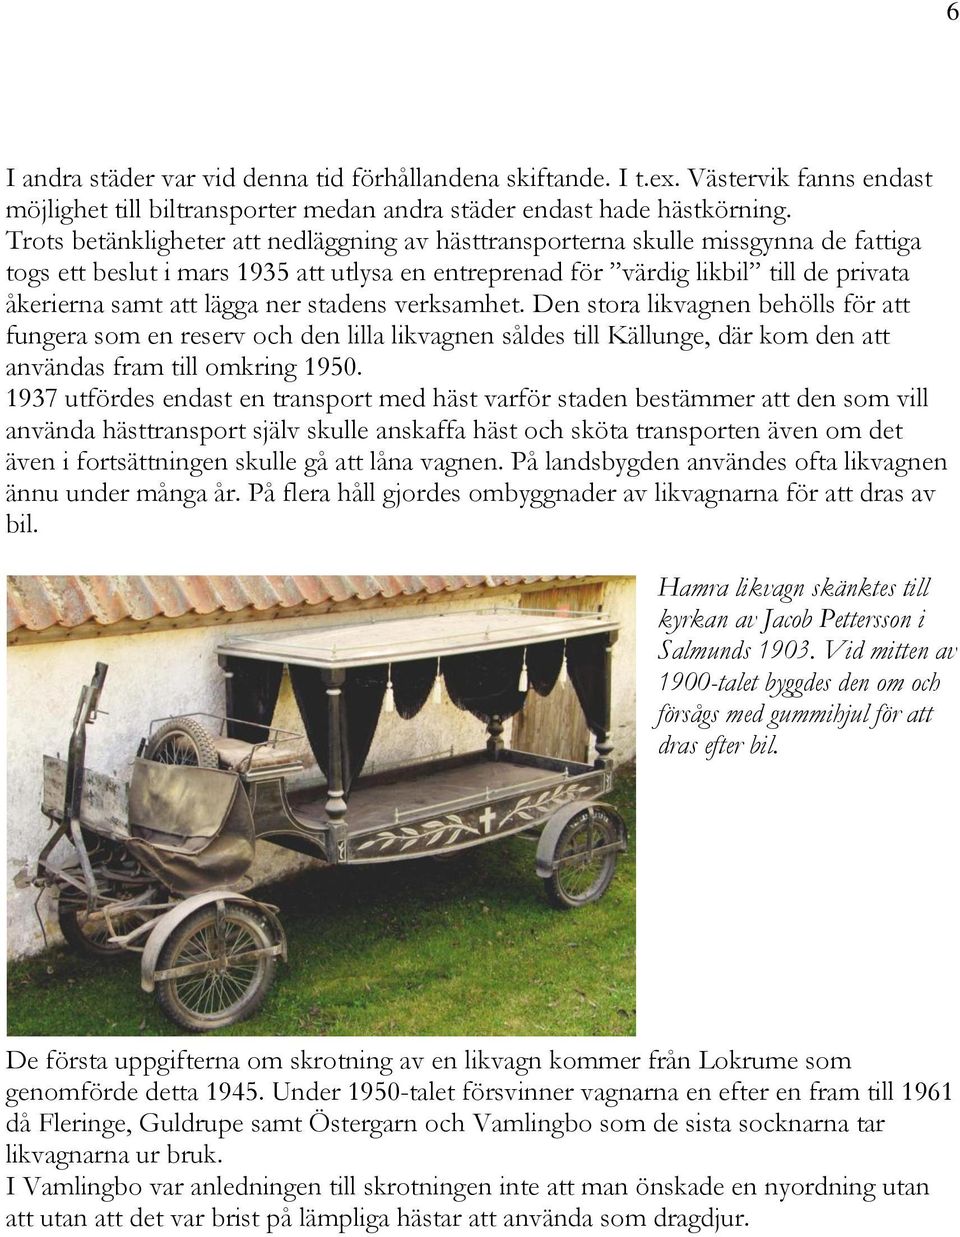 ner stadens verksamhet. Den stora likvagnen behölls för att fungera som en reserv och den lilla likvagnen såldes till Källunge, där kom den att användas fram till omkring 1950.